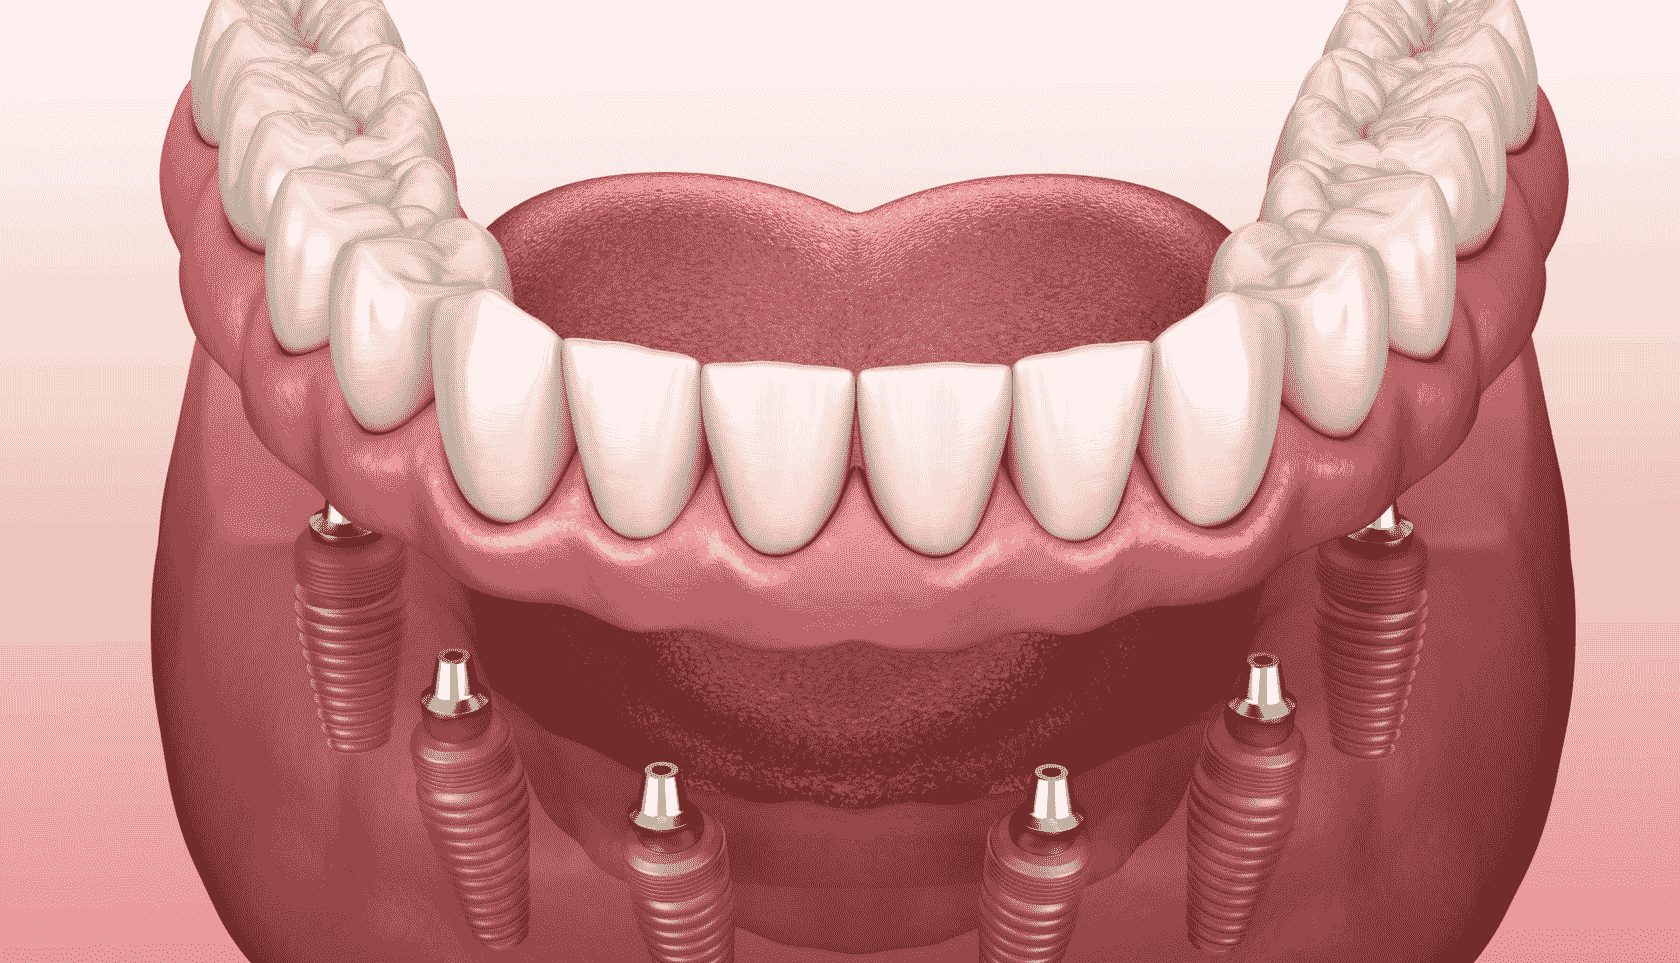 Сучасне протезування зубів у My Smile